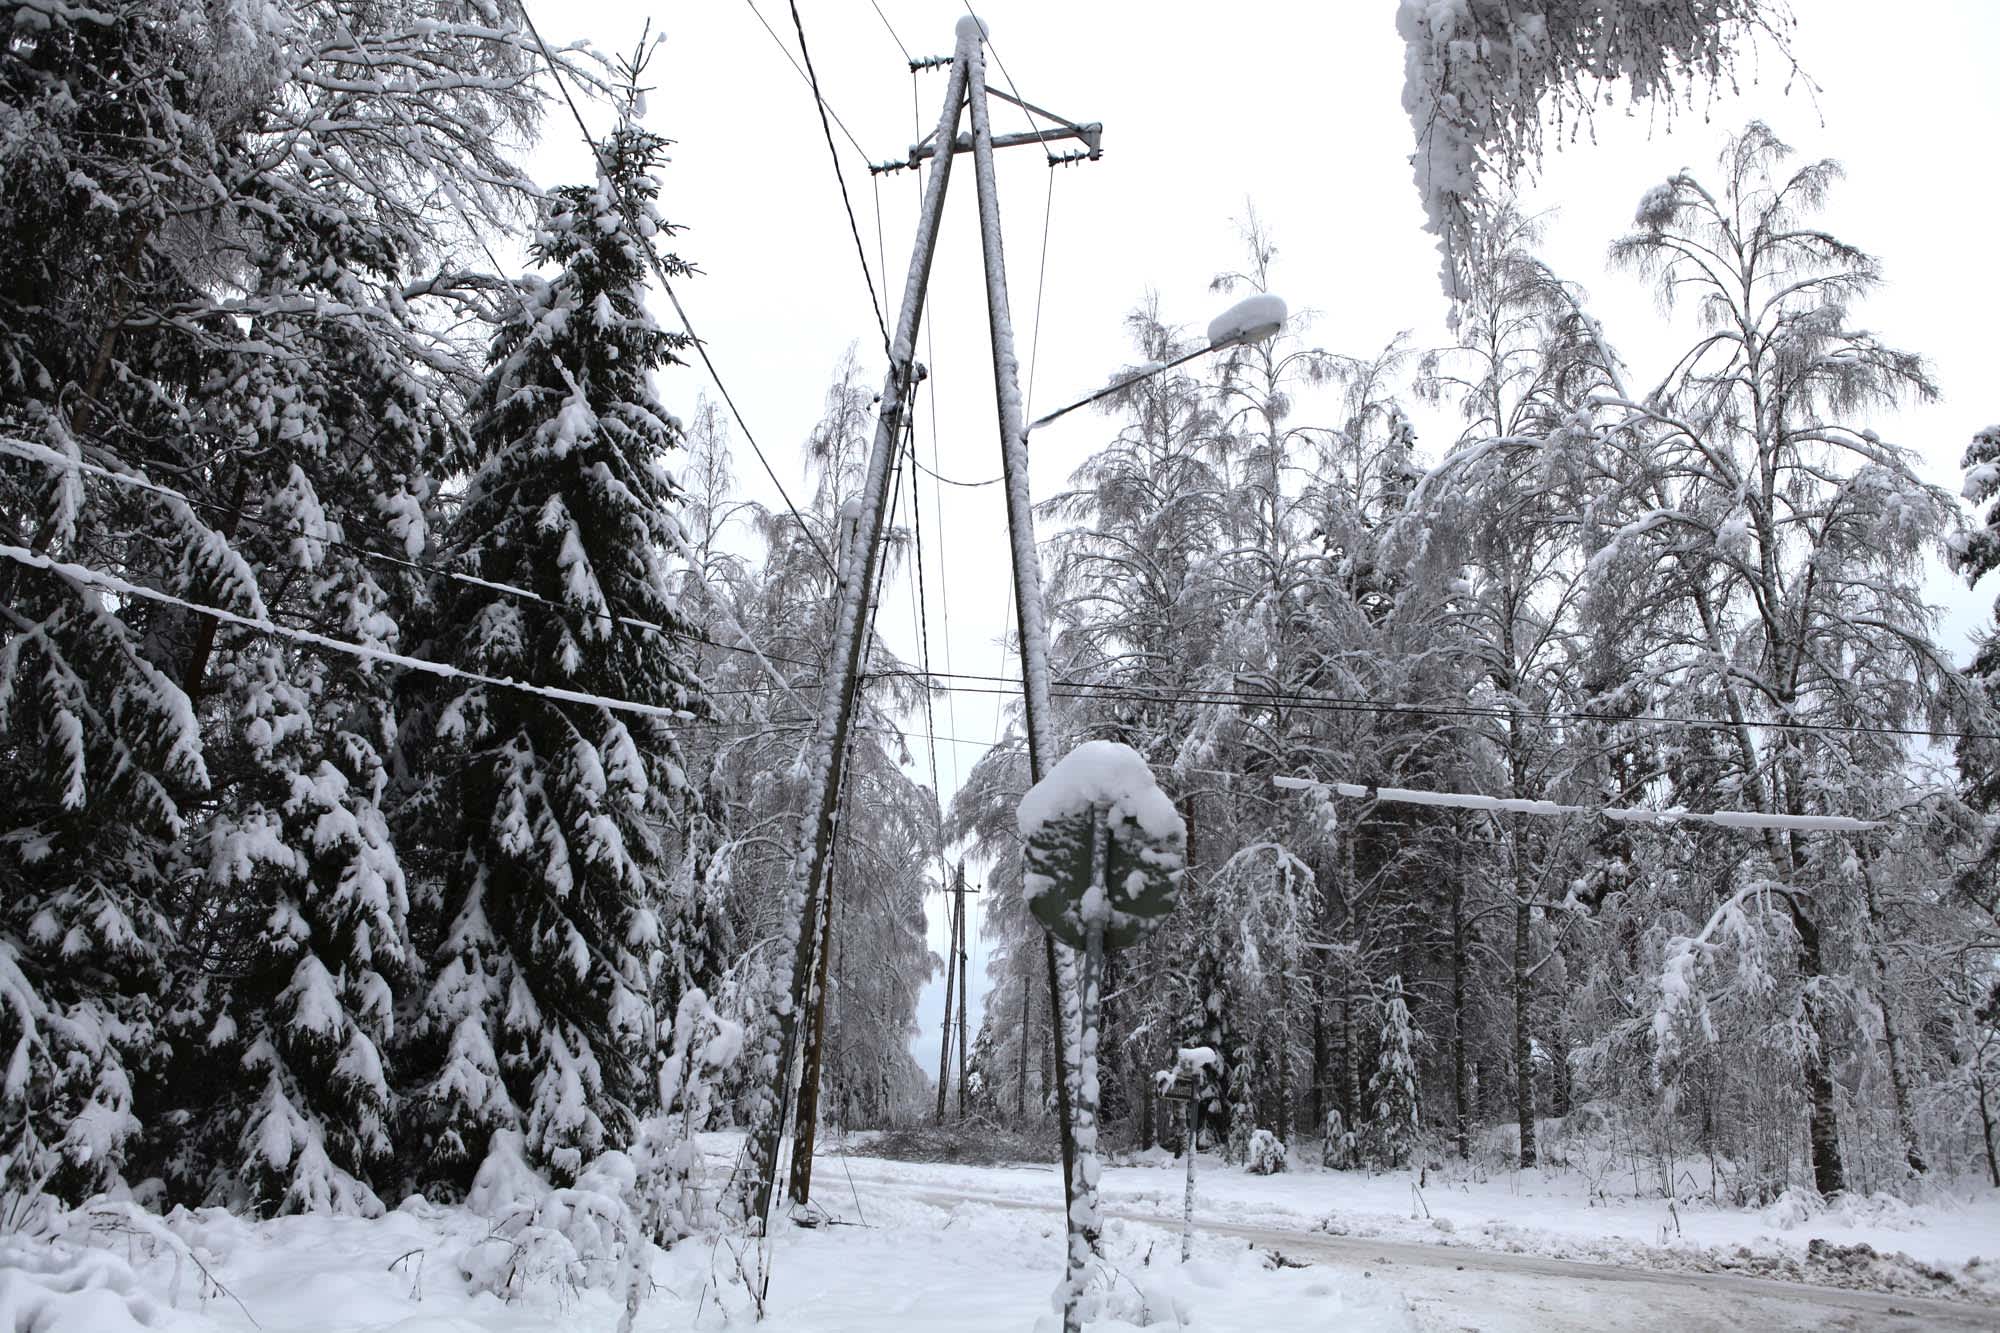 Lumi painaa puita sähkölinjoille.